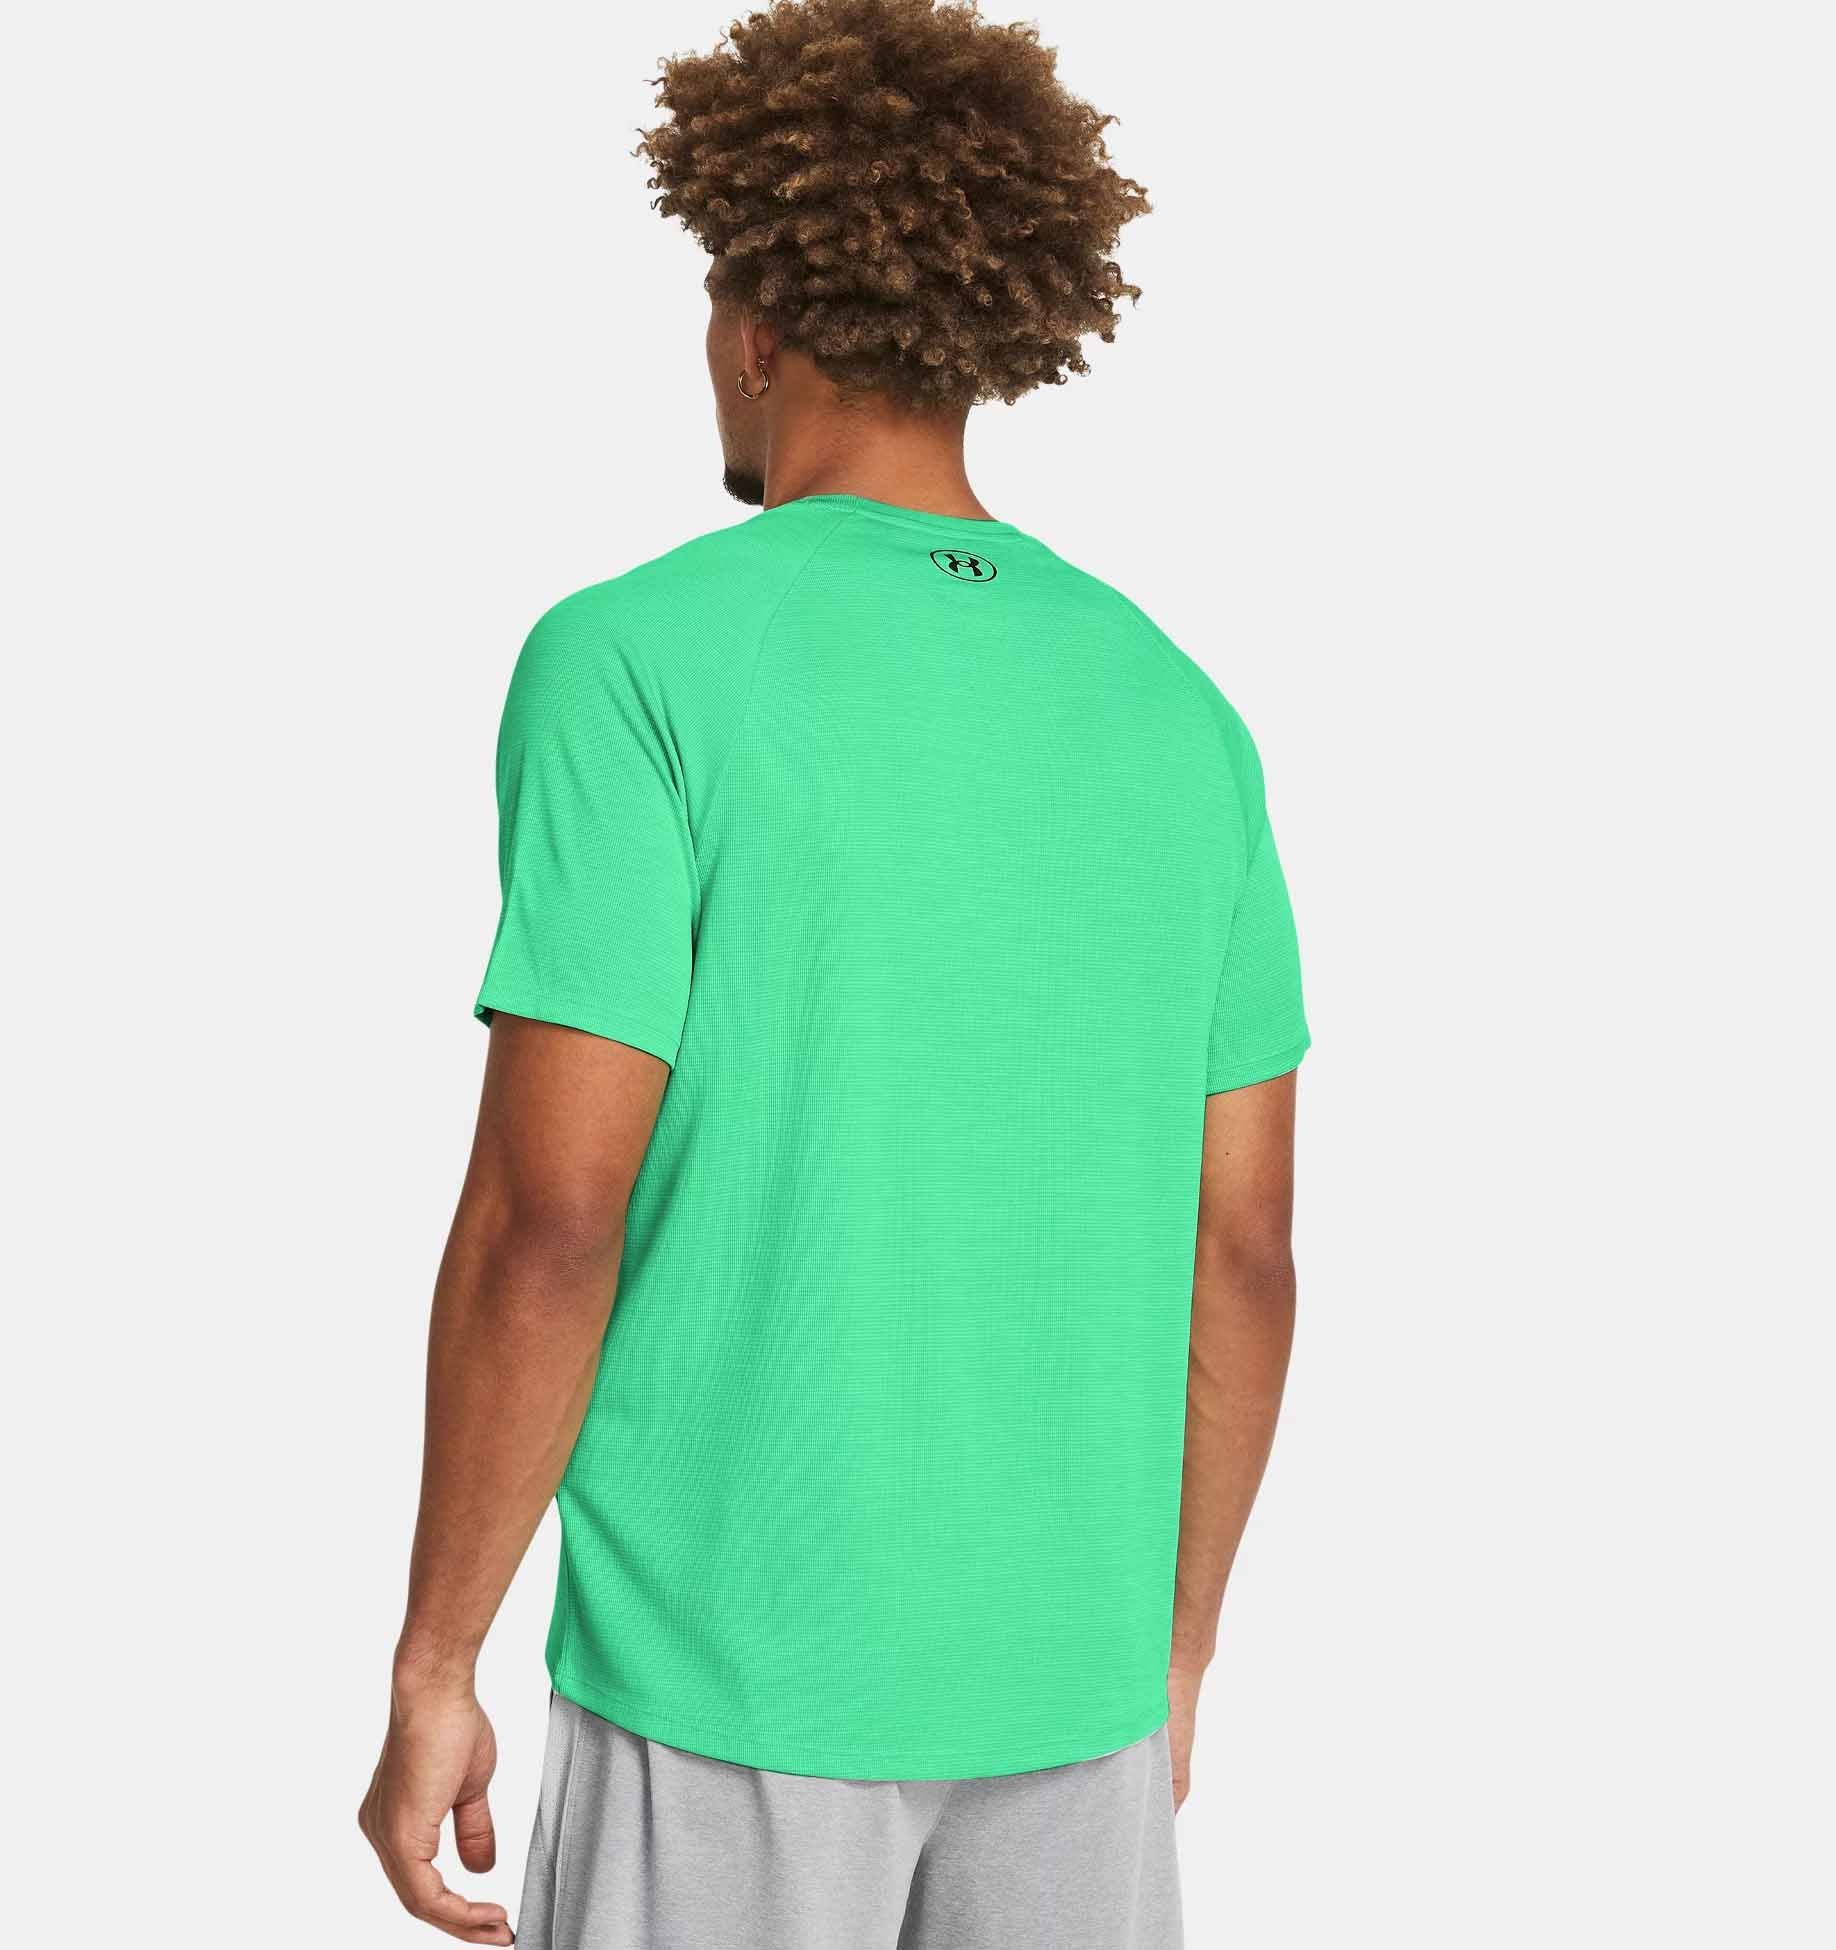 UA Tech Textured Short Sleeve Shirt